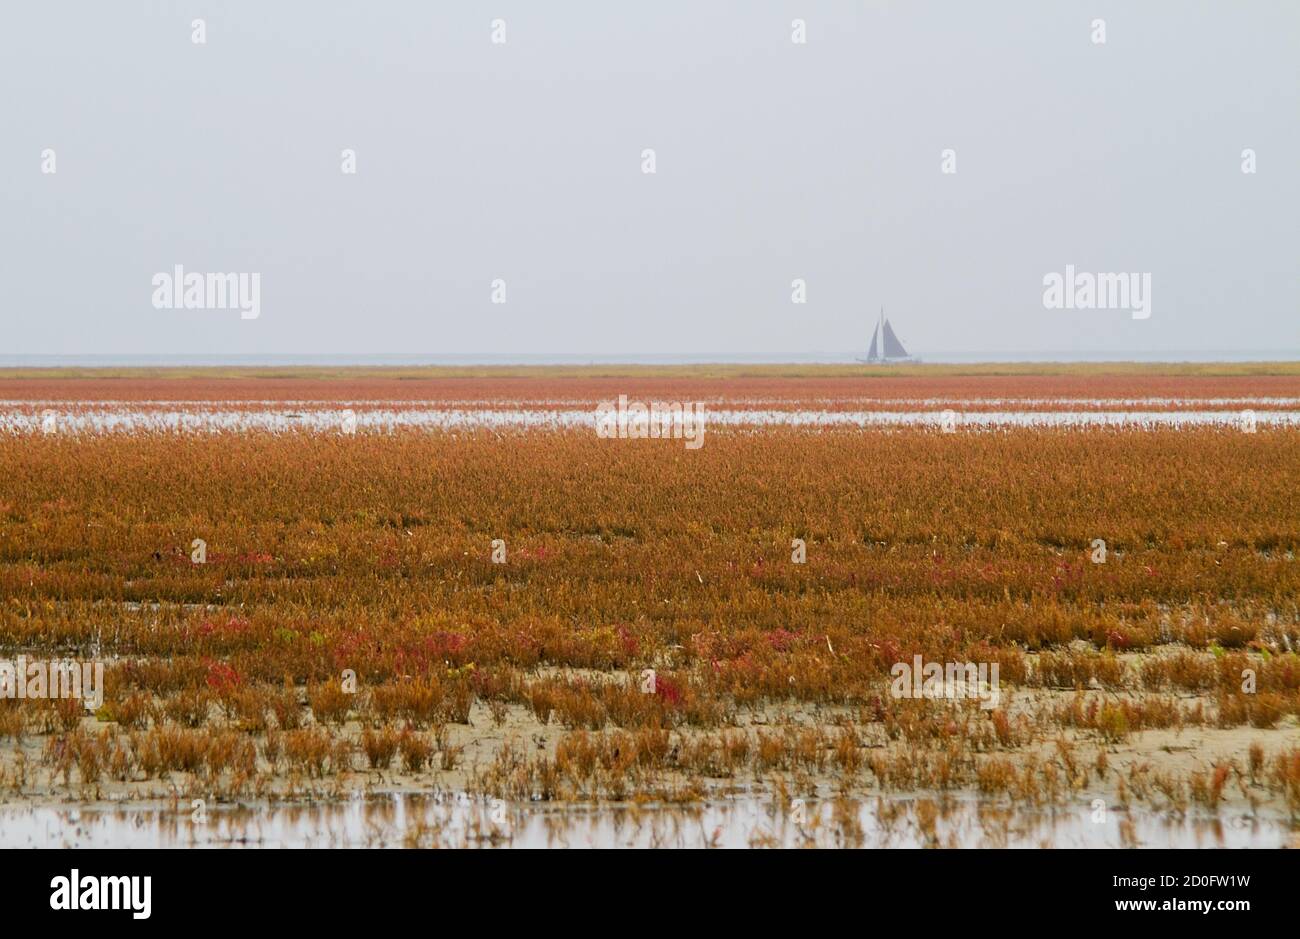 Saltmarsh à l'automne, champ de végétation tolérante au sel, principalement herbacée seepweed et Glasswort, coloration rouge à l'horizon d'un bateau à voile Banque D'Images